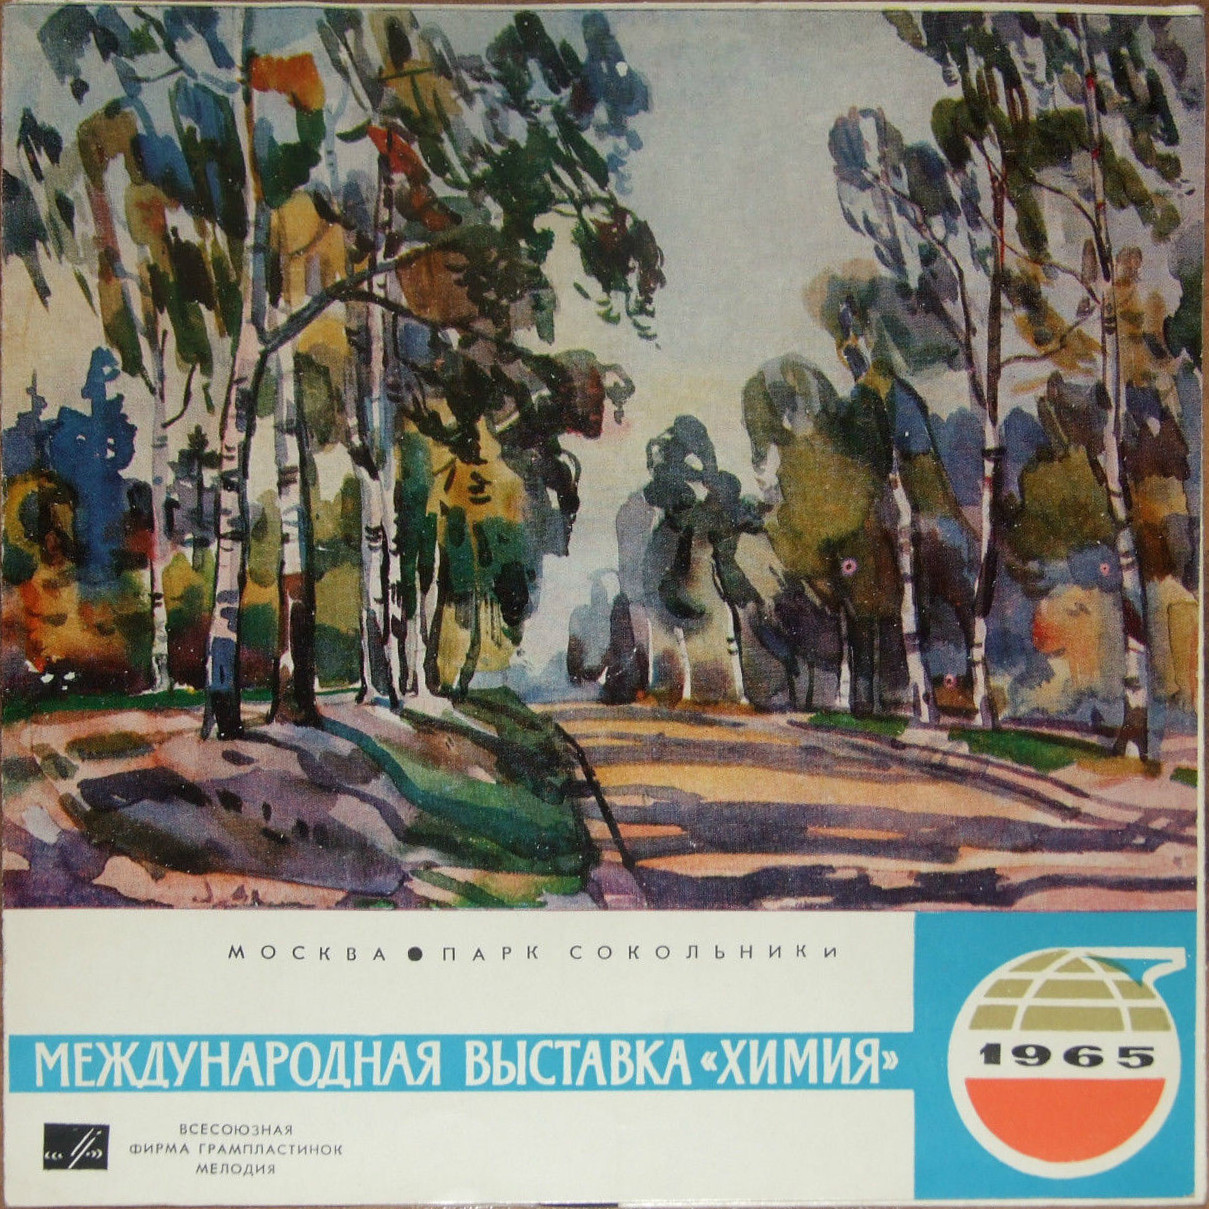 Международная выставка "ХИМИЯ-1965" (Москва, Парк Сокольники)